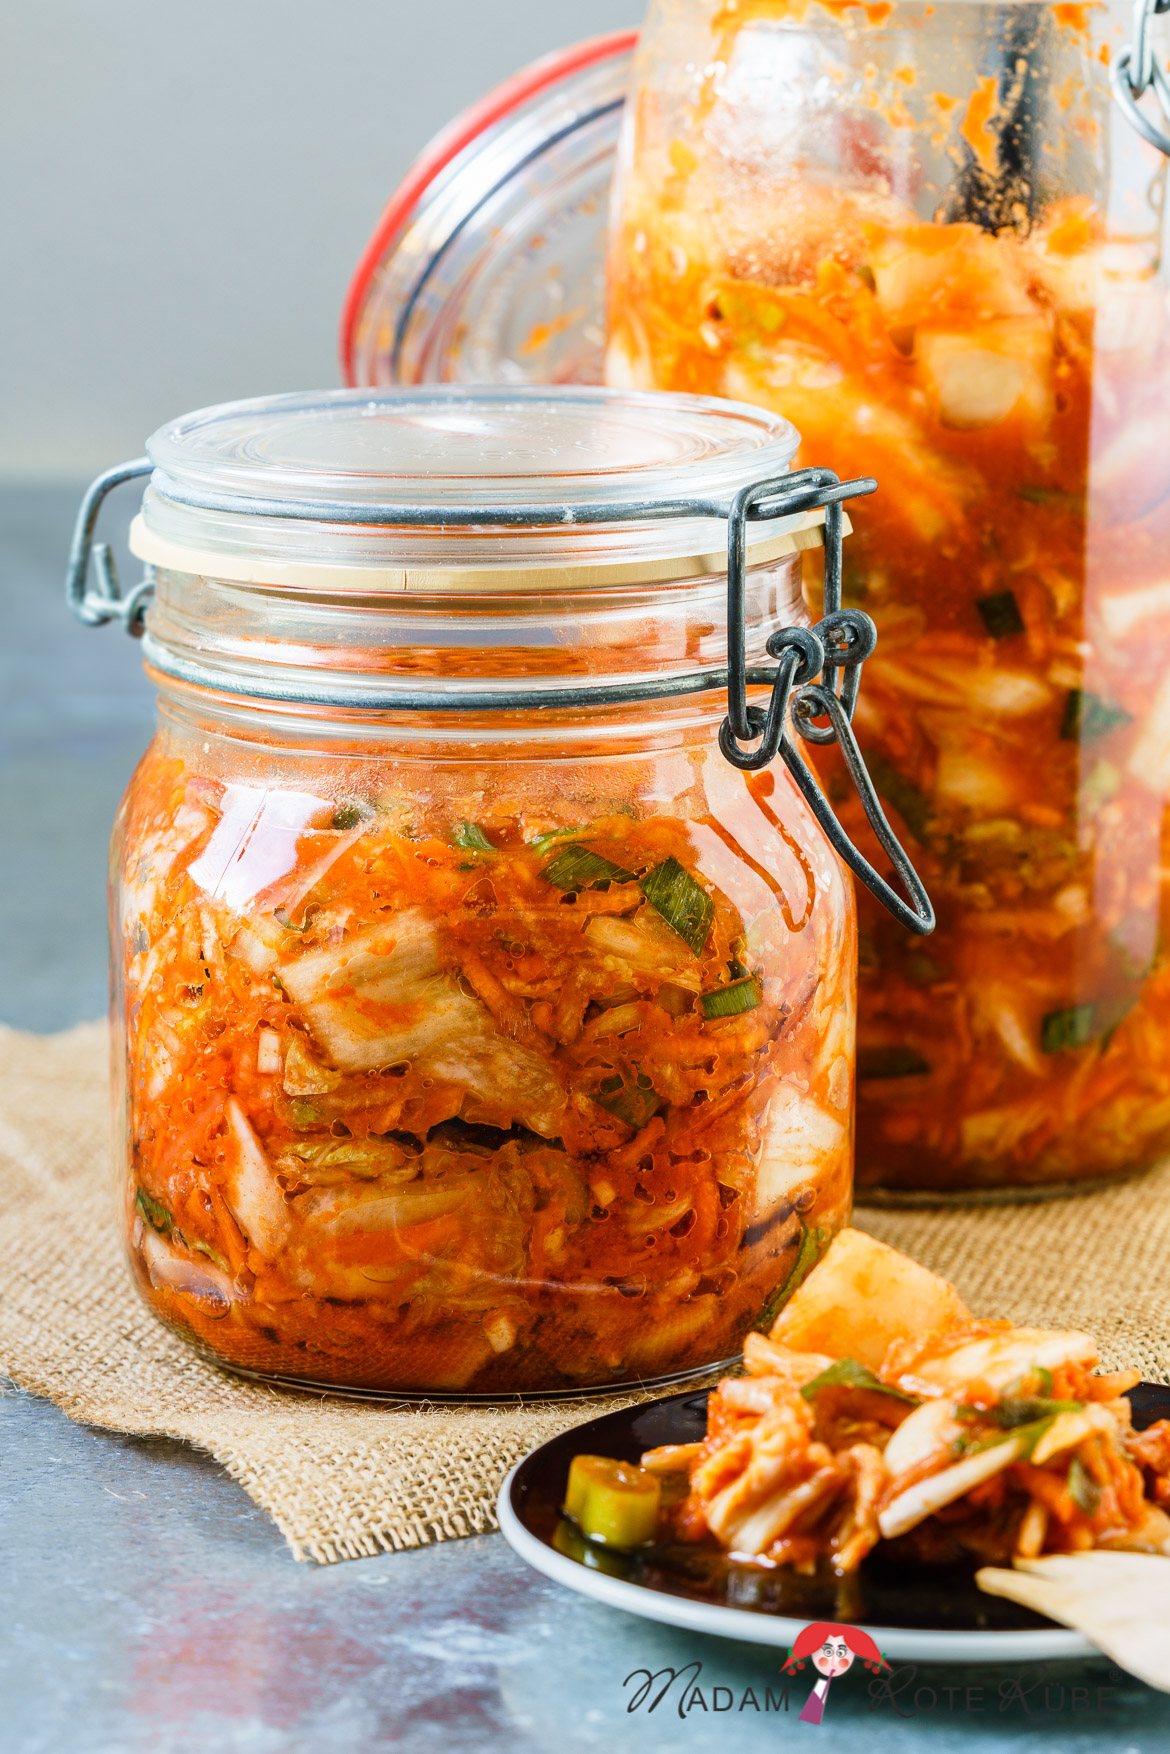 Madam Rote Rübe - Kimchi - milchsauer eingelegter Chinakohl mit Möhren und Rettich